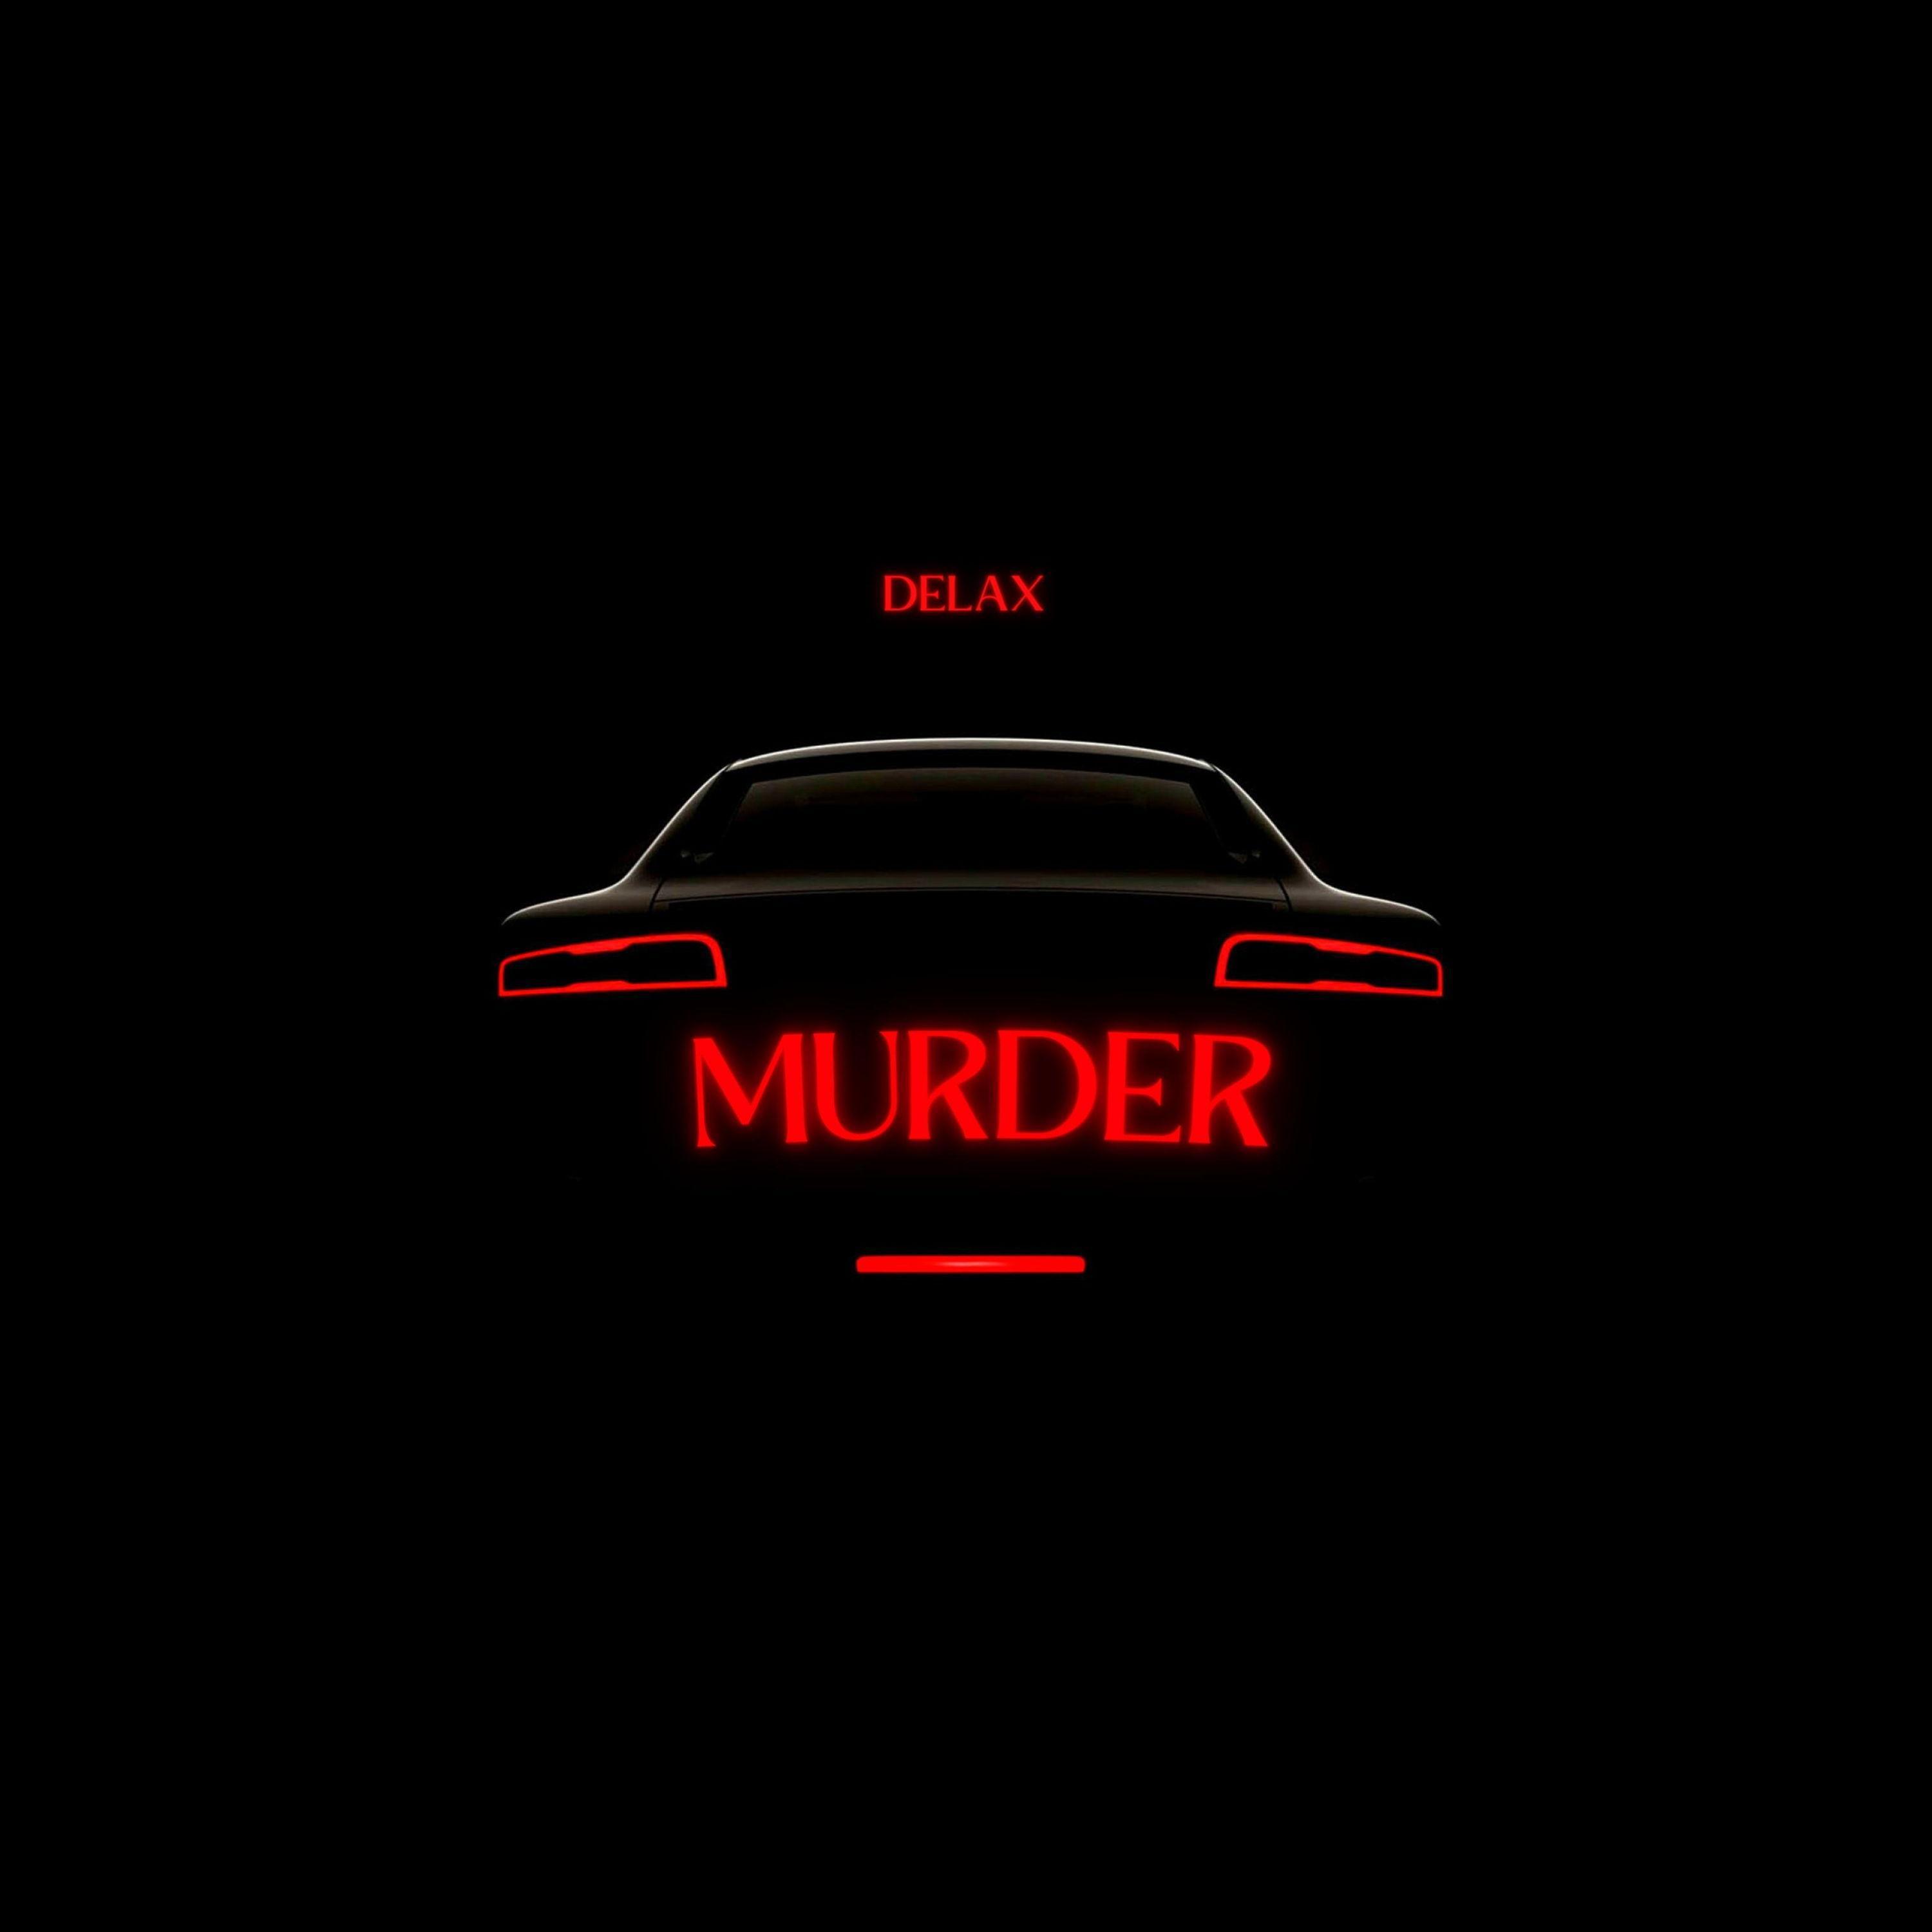 Delax - Murder